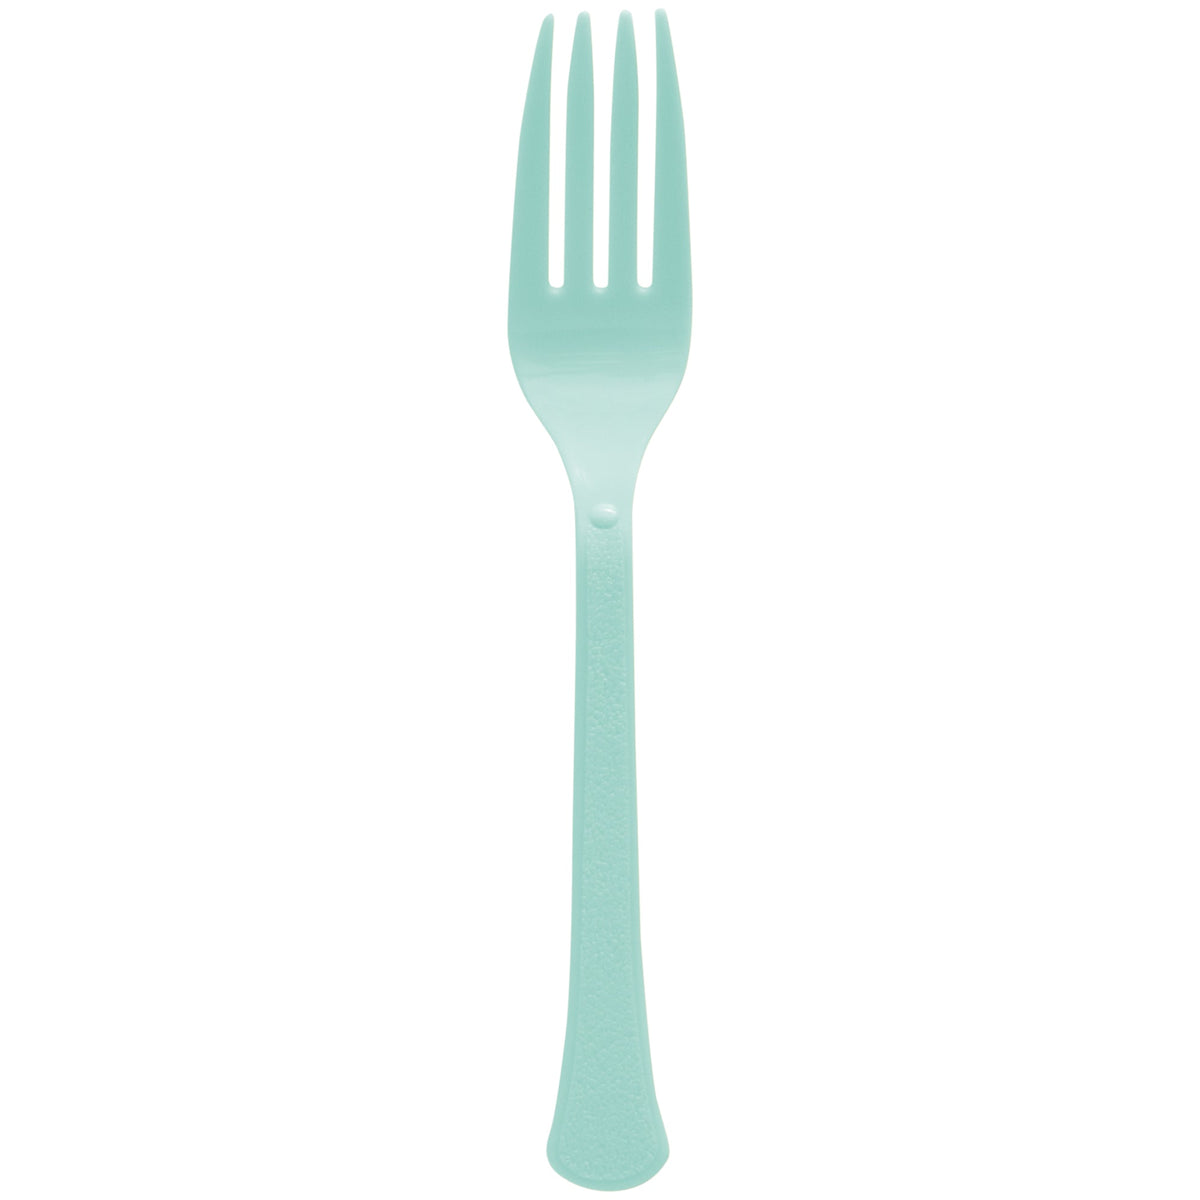 Robin's Egg Blue Forks - 50 Count Heavyweight PP( Polypropylene) Plastic Forks